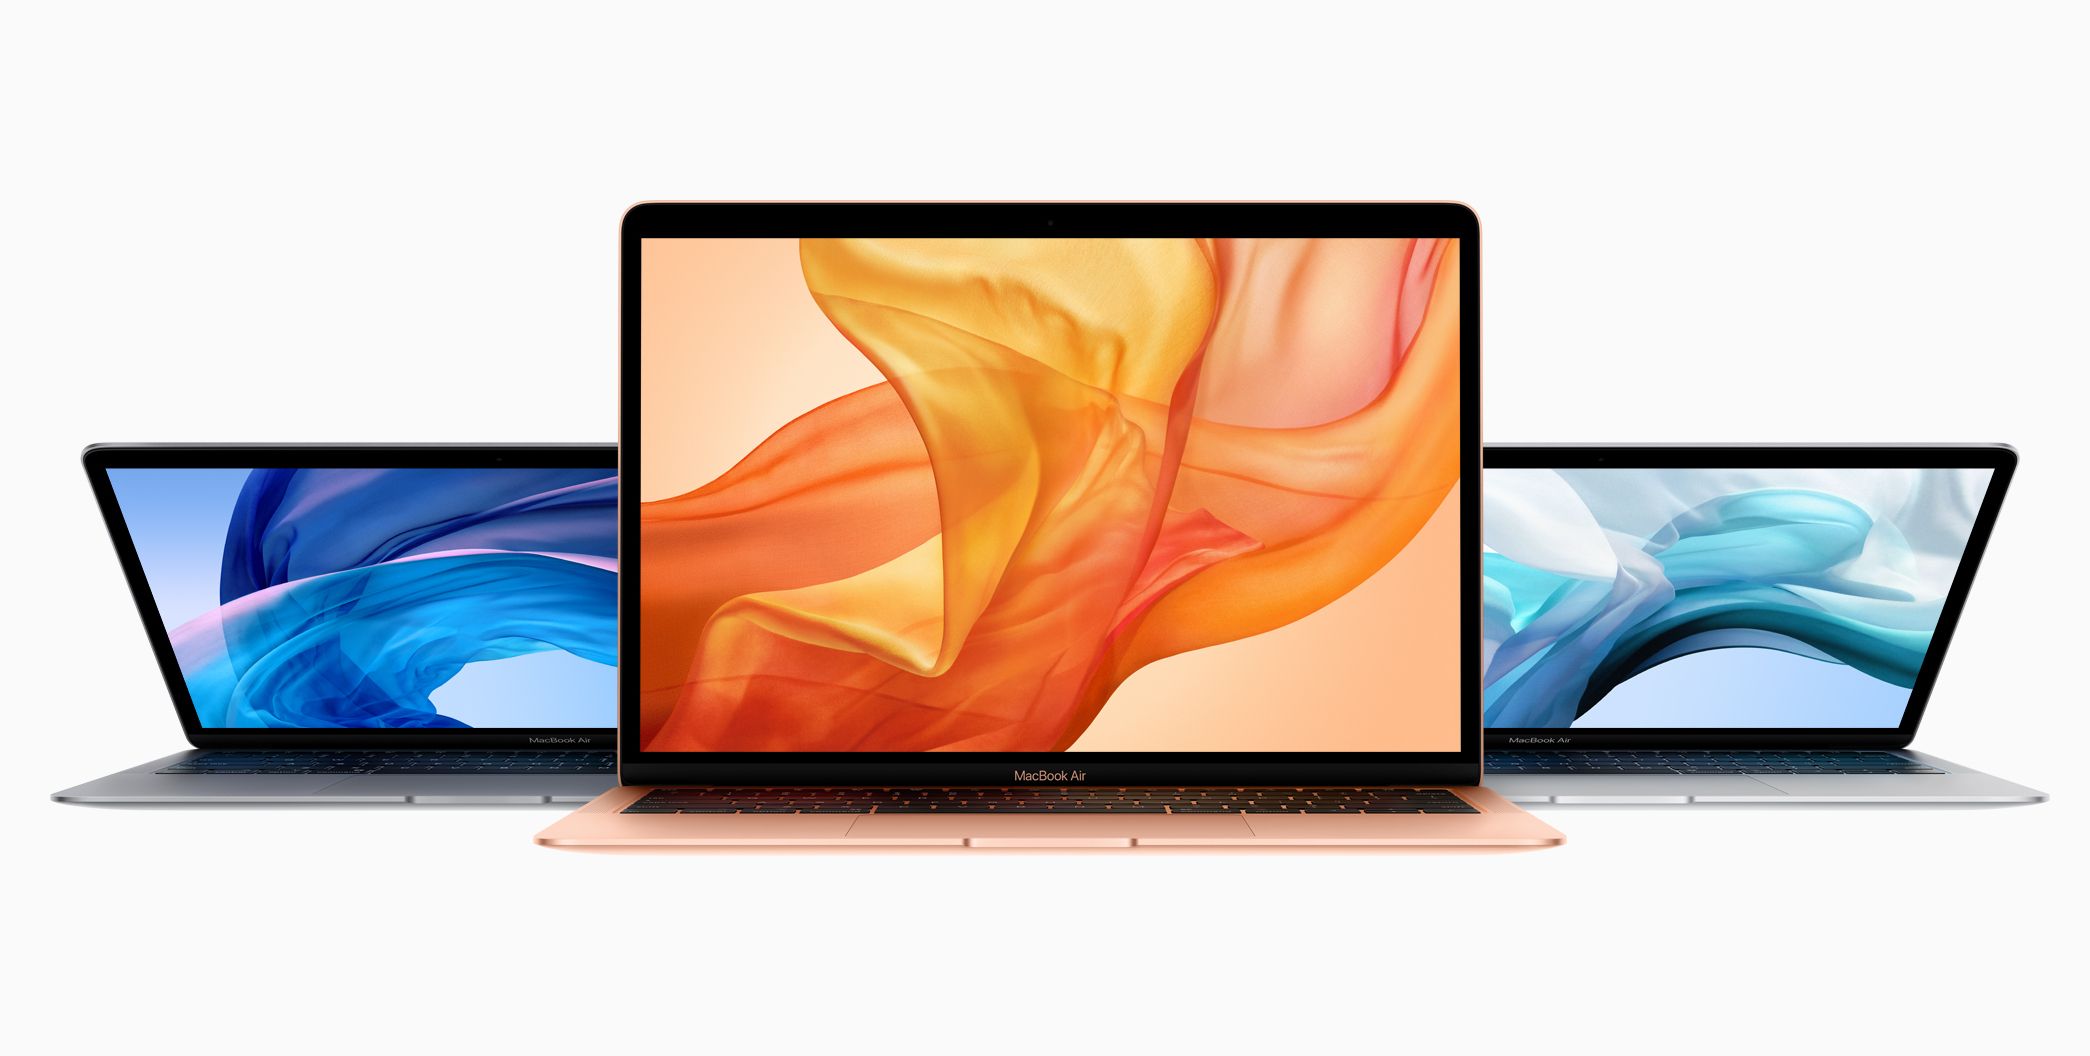 DSCC : le modèle Apple MacBook Air 15 pouces annoncé pour 2023